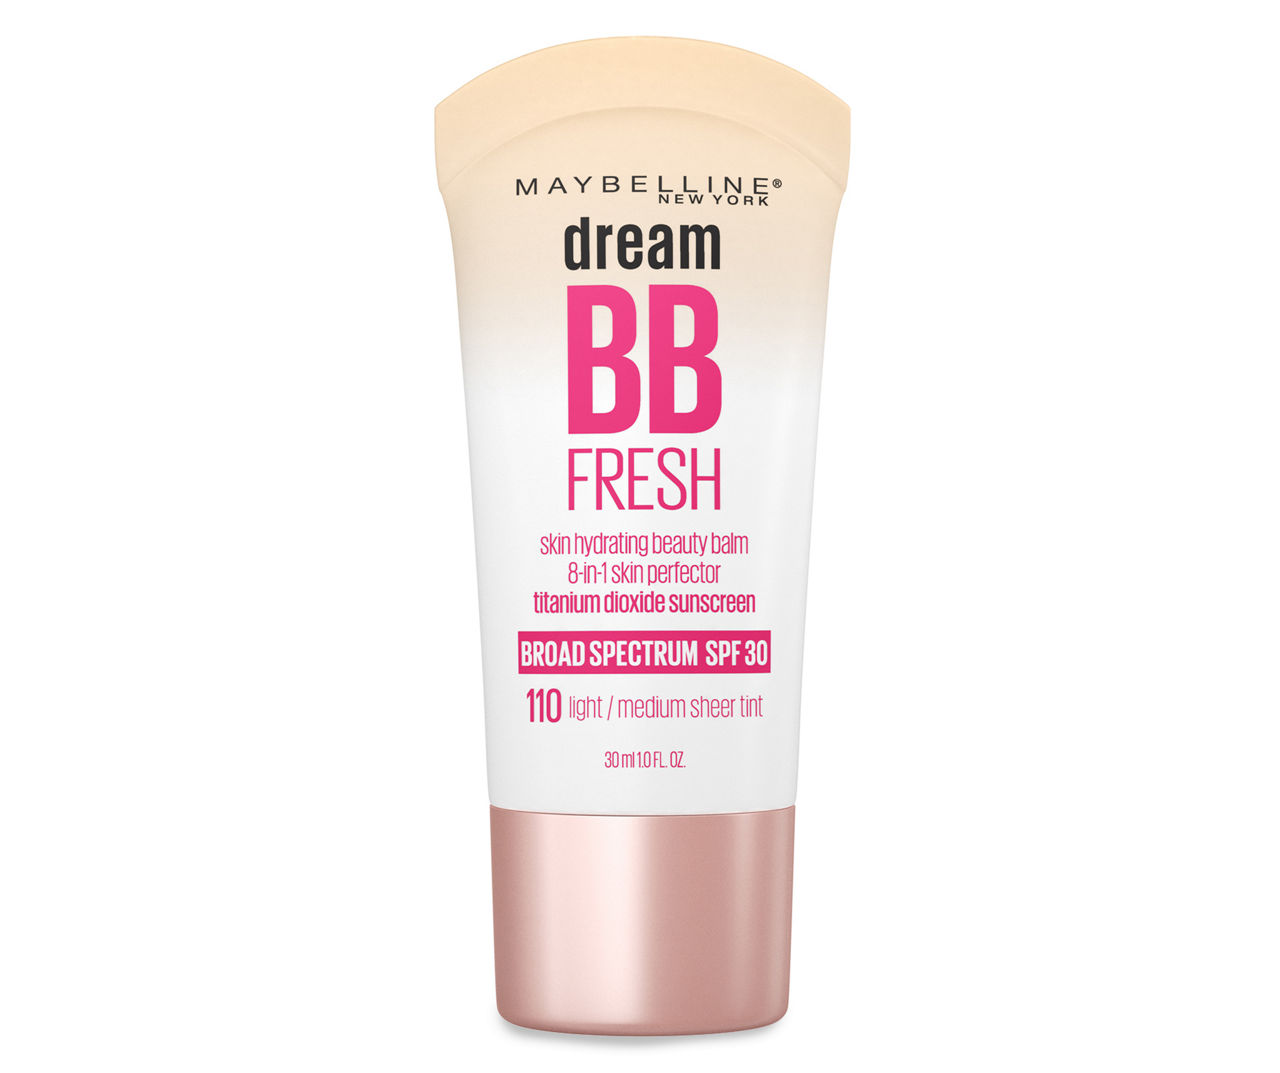 Maybelline Dream Pure BB Cream 8-in-1 Skin Perfector